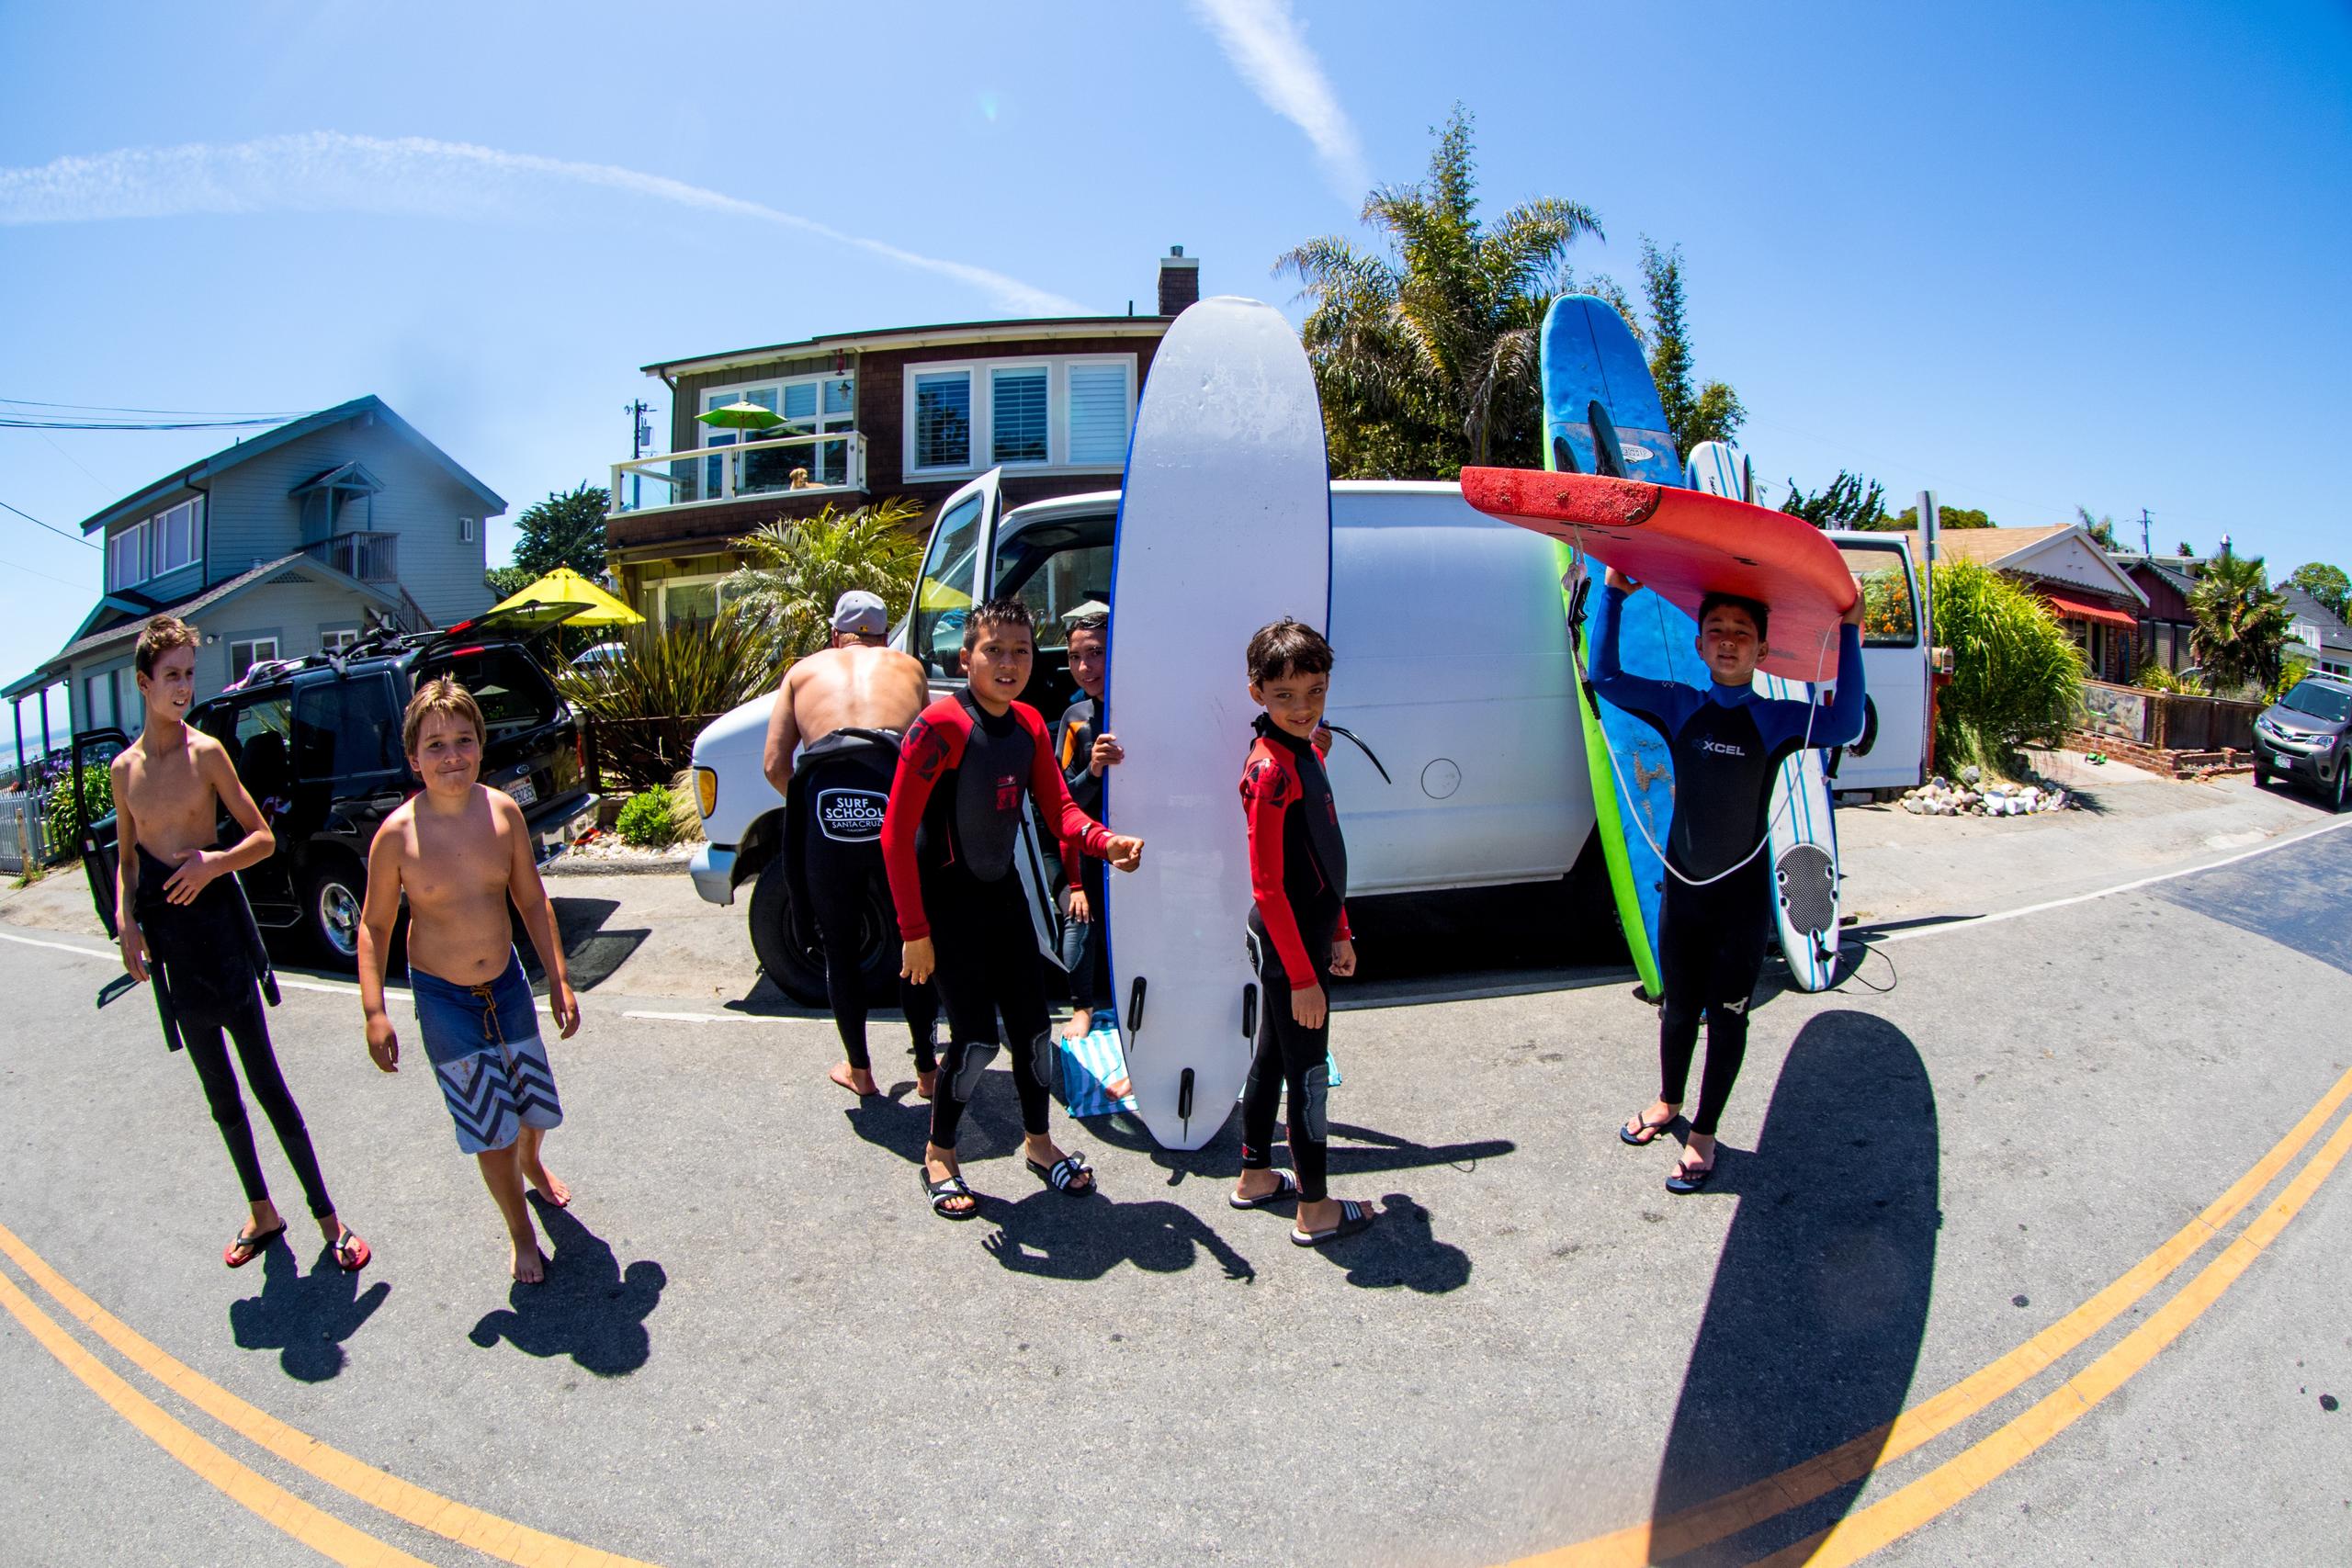 Private Surf Lesson for Two in Santa Cruz